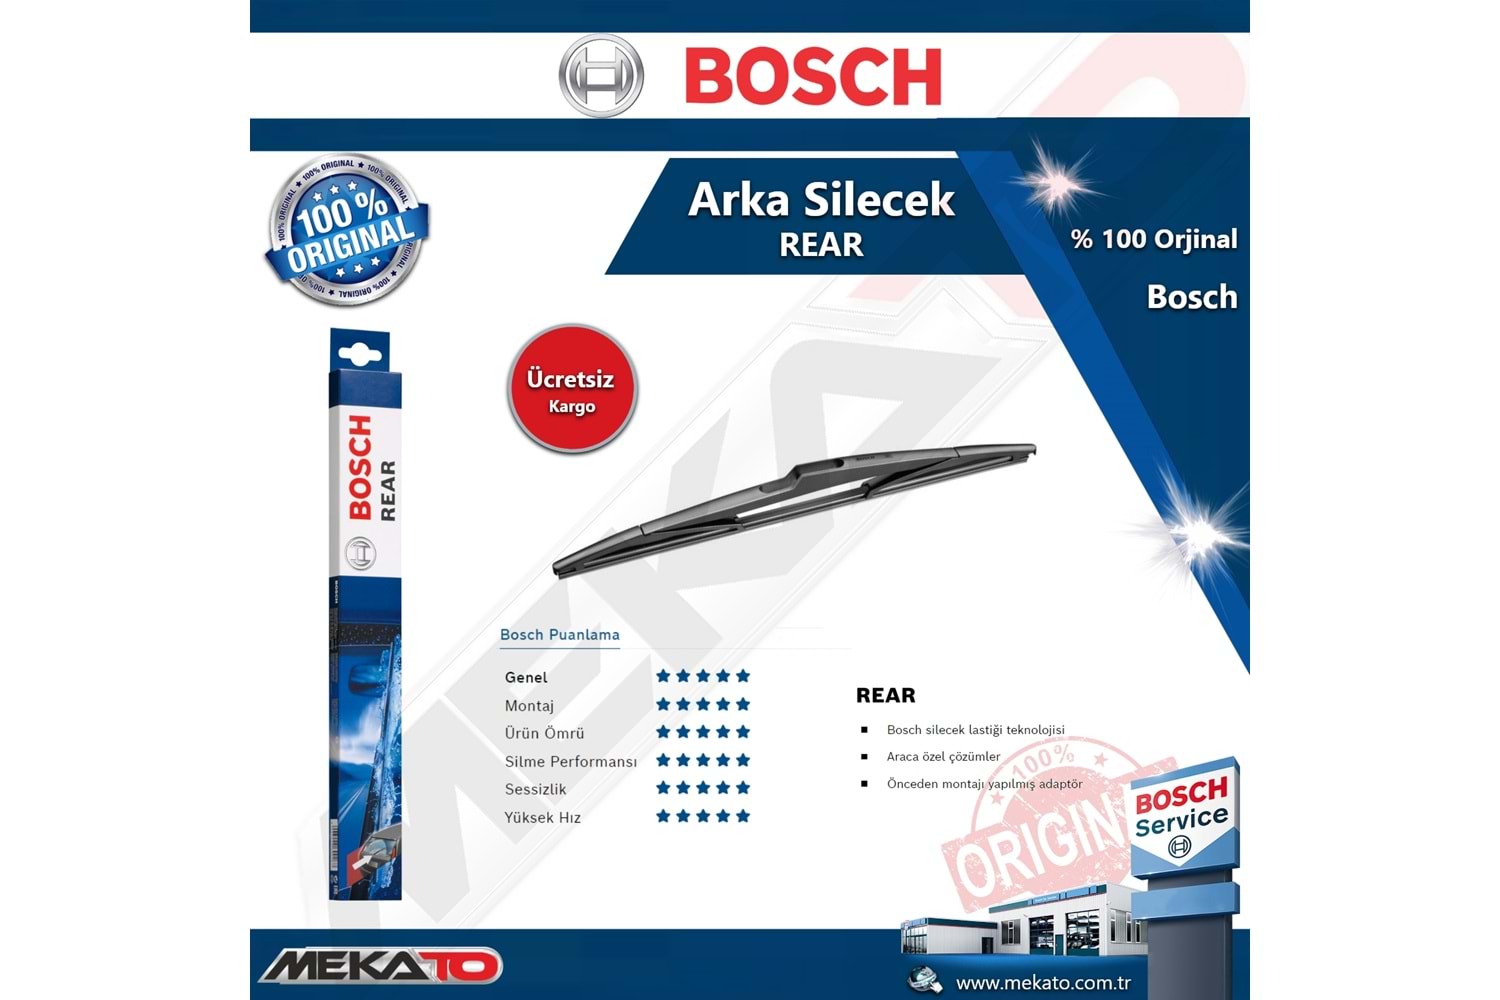 Citroen Berlingo Arka Silecek Bosch Rear 2008-2018